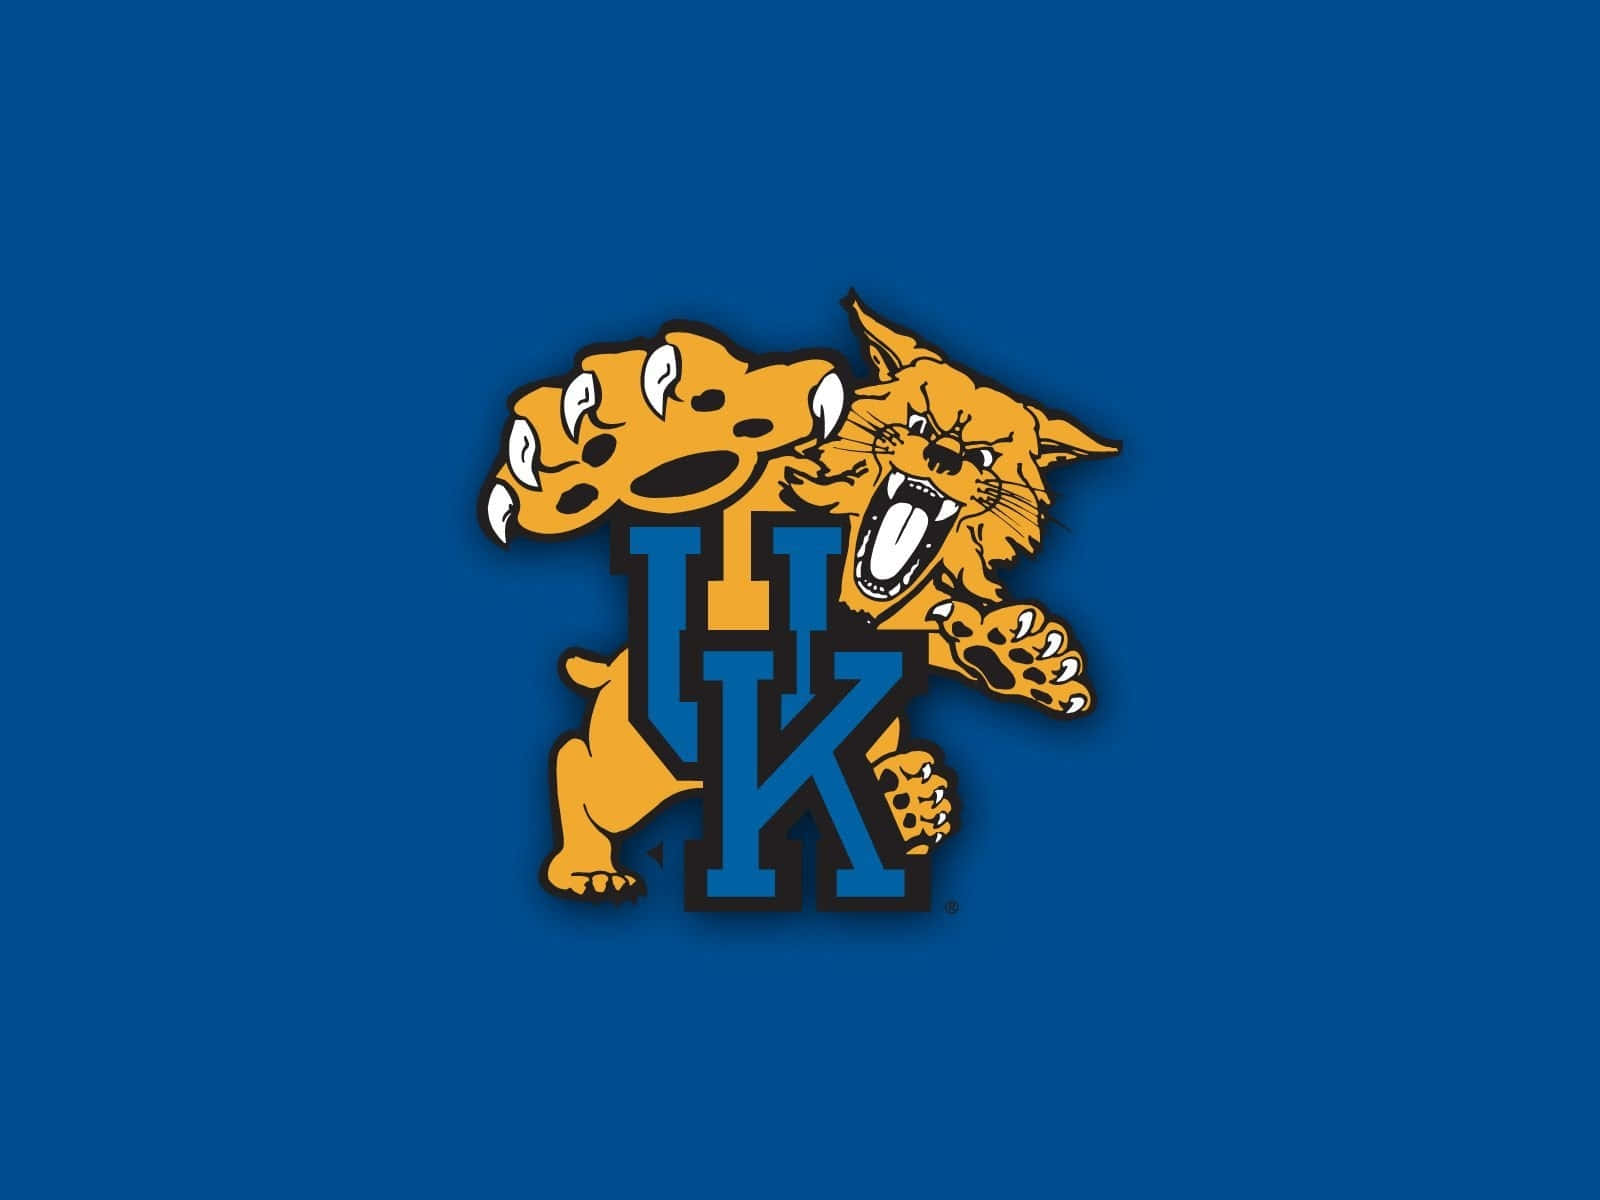 Kentuckywildcats Är Stolta Över Att Representera Sitt Universitet På Dator- Eller Mobilbakgrunden. Wallpaper